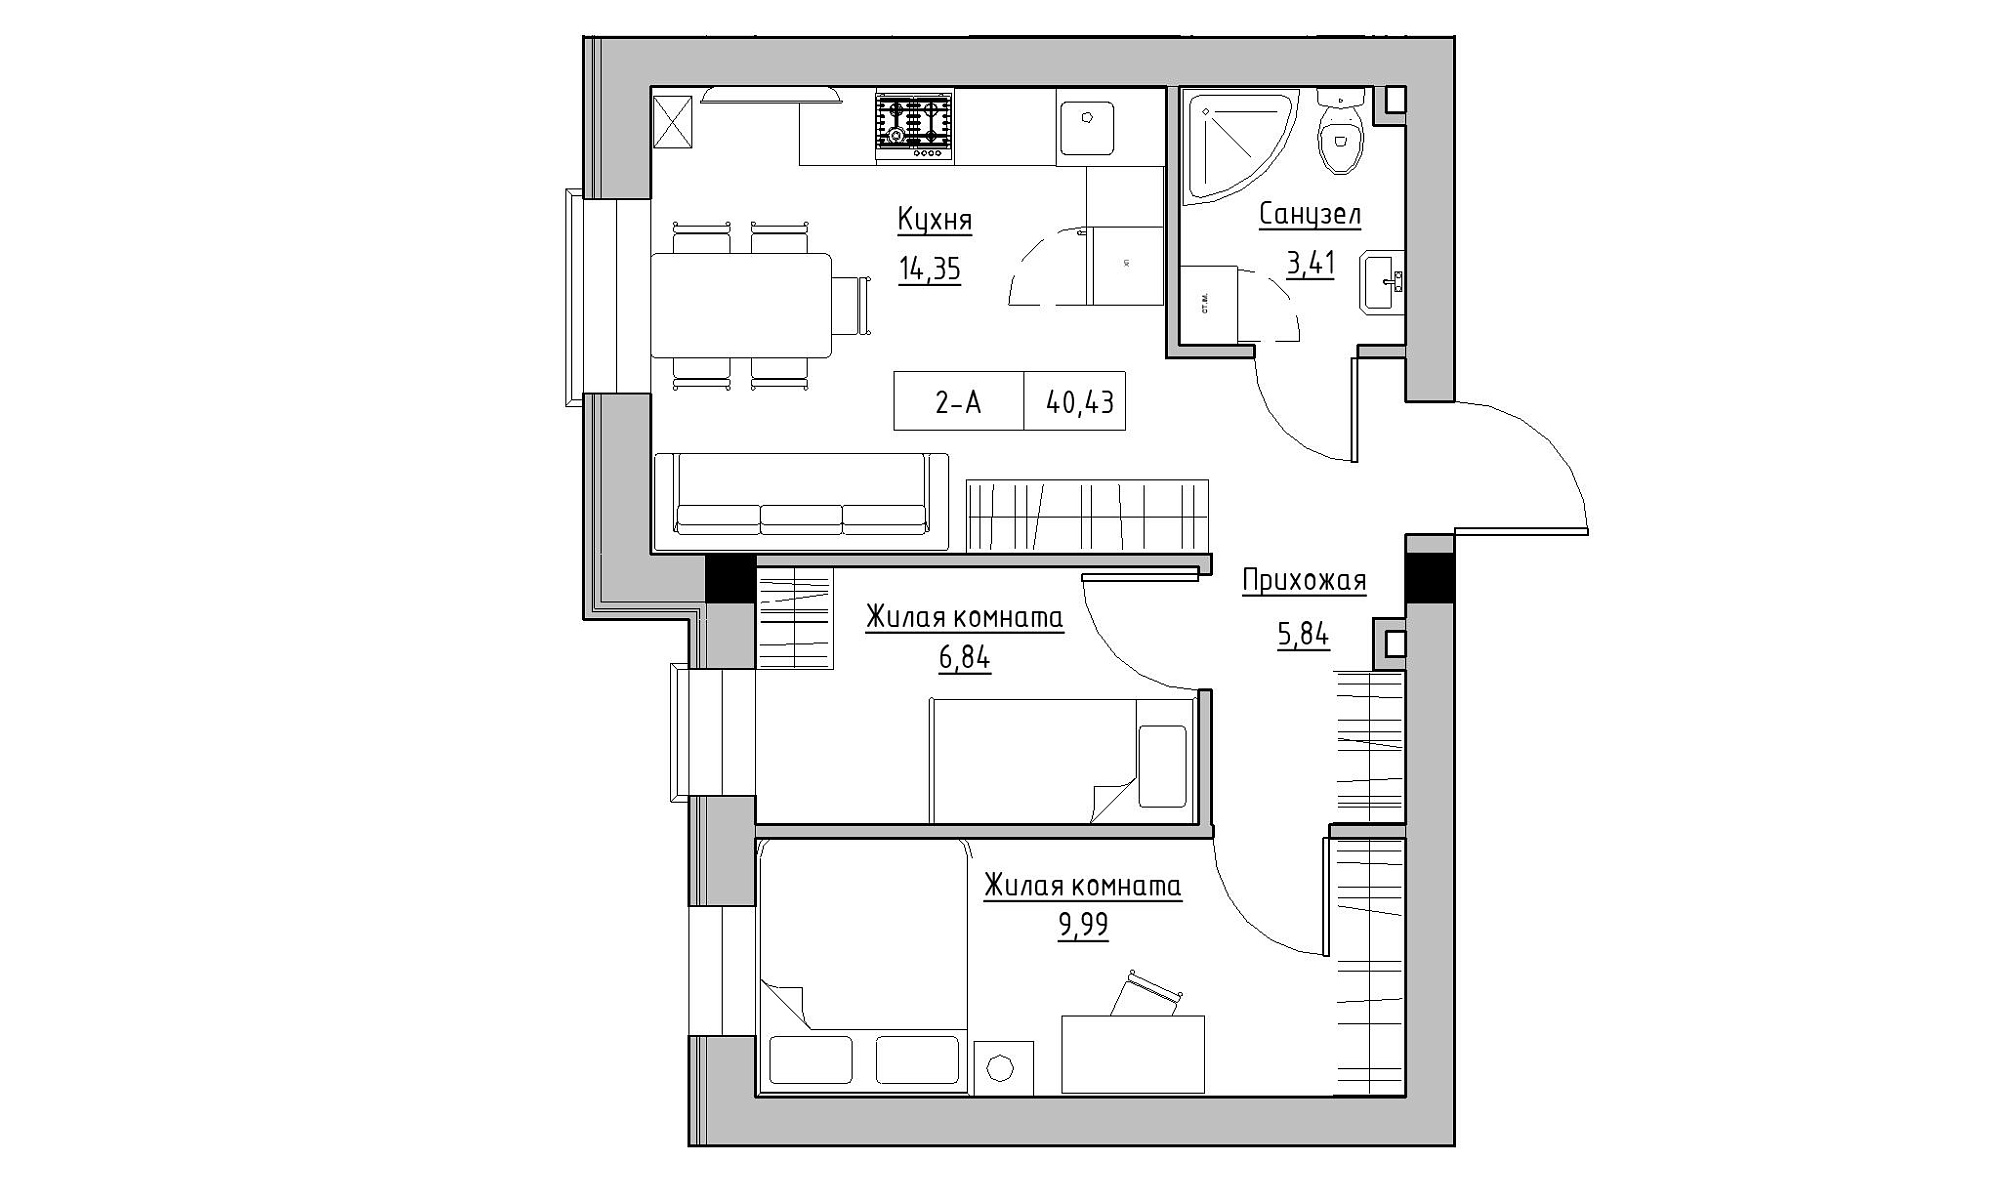 Планировка 2-к квартира площей 40.43м2, KS-021-01/0004.